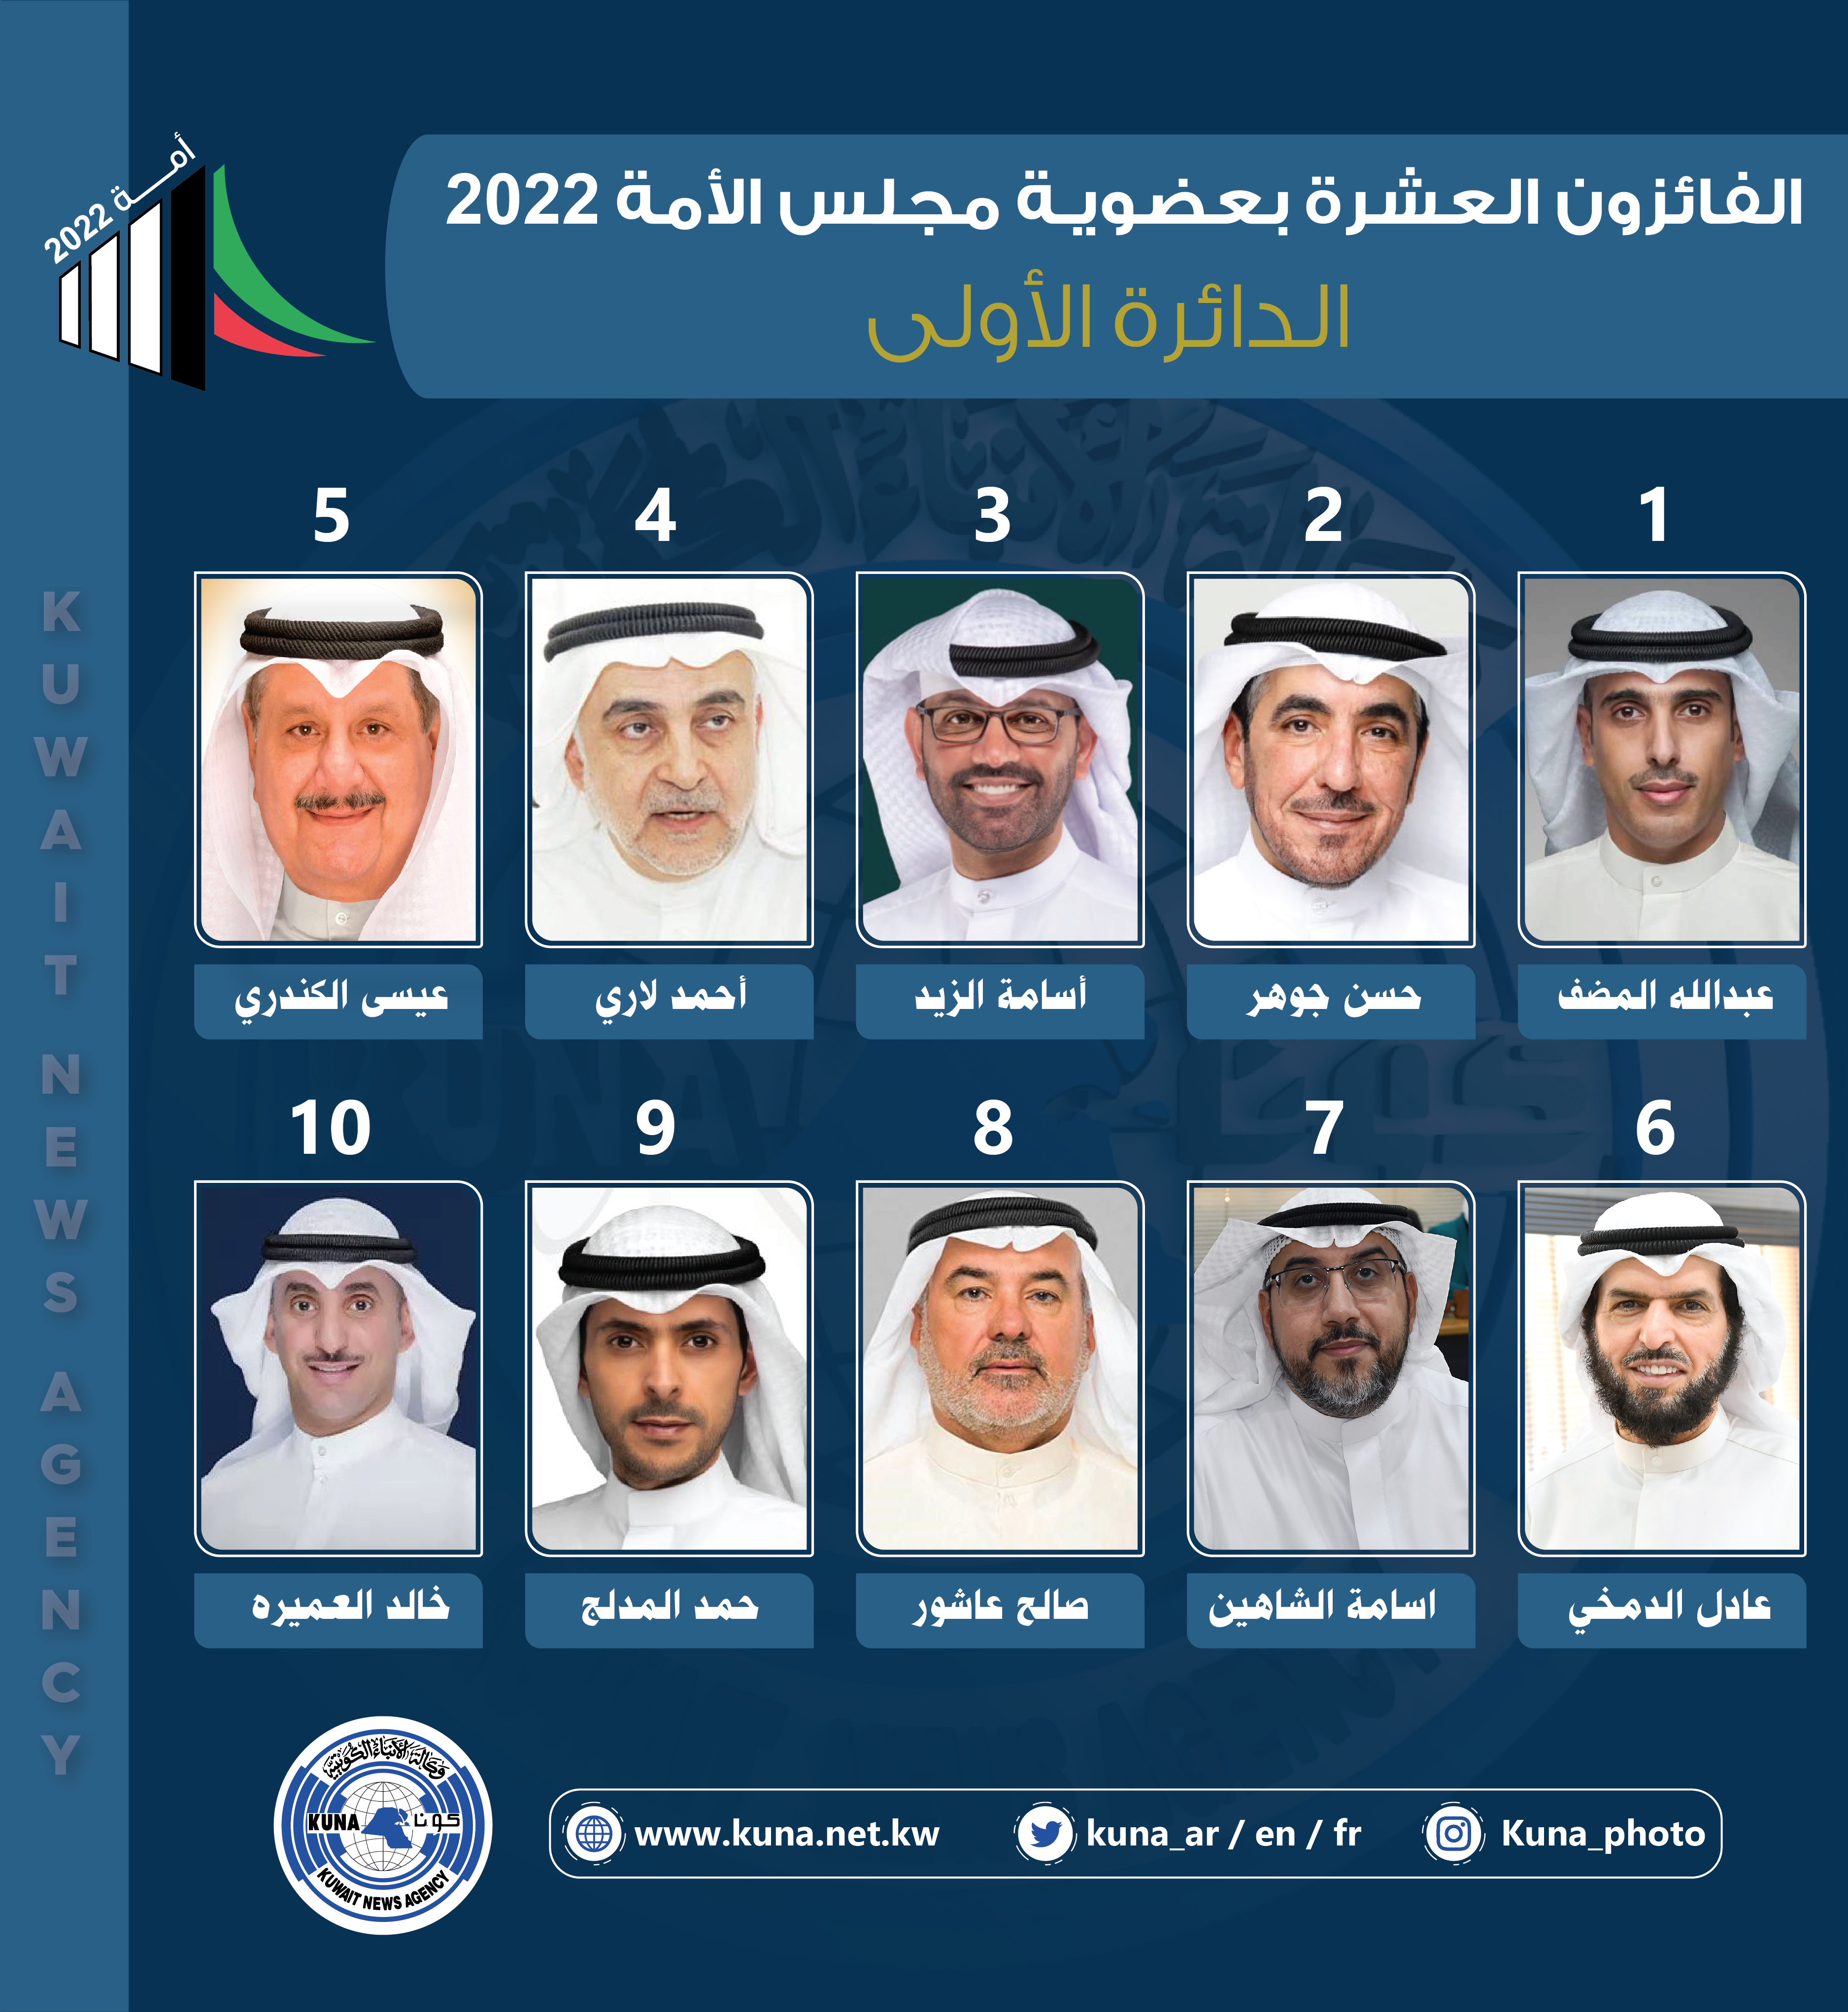 أسماء الفائزين بعضوية مجلس الأمة الكويتي (أمة 2022) عن الدائرة الانتخابية الأولى